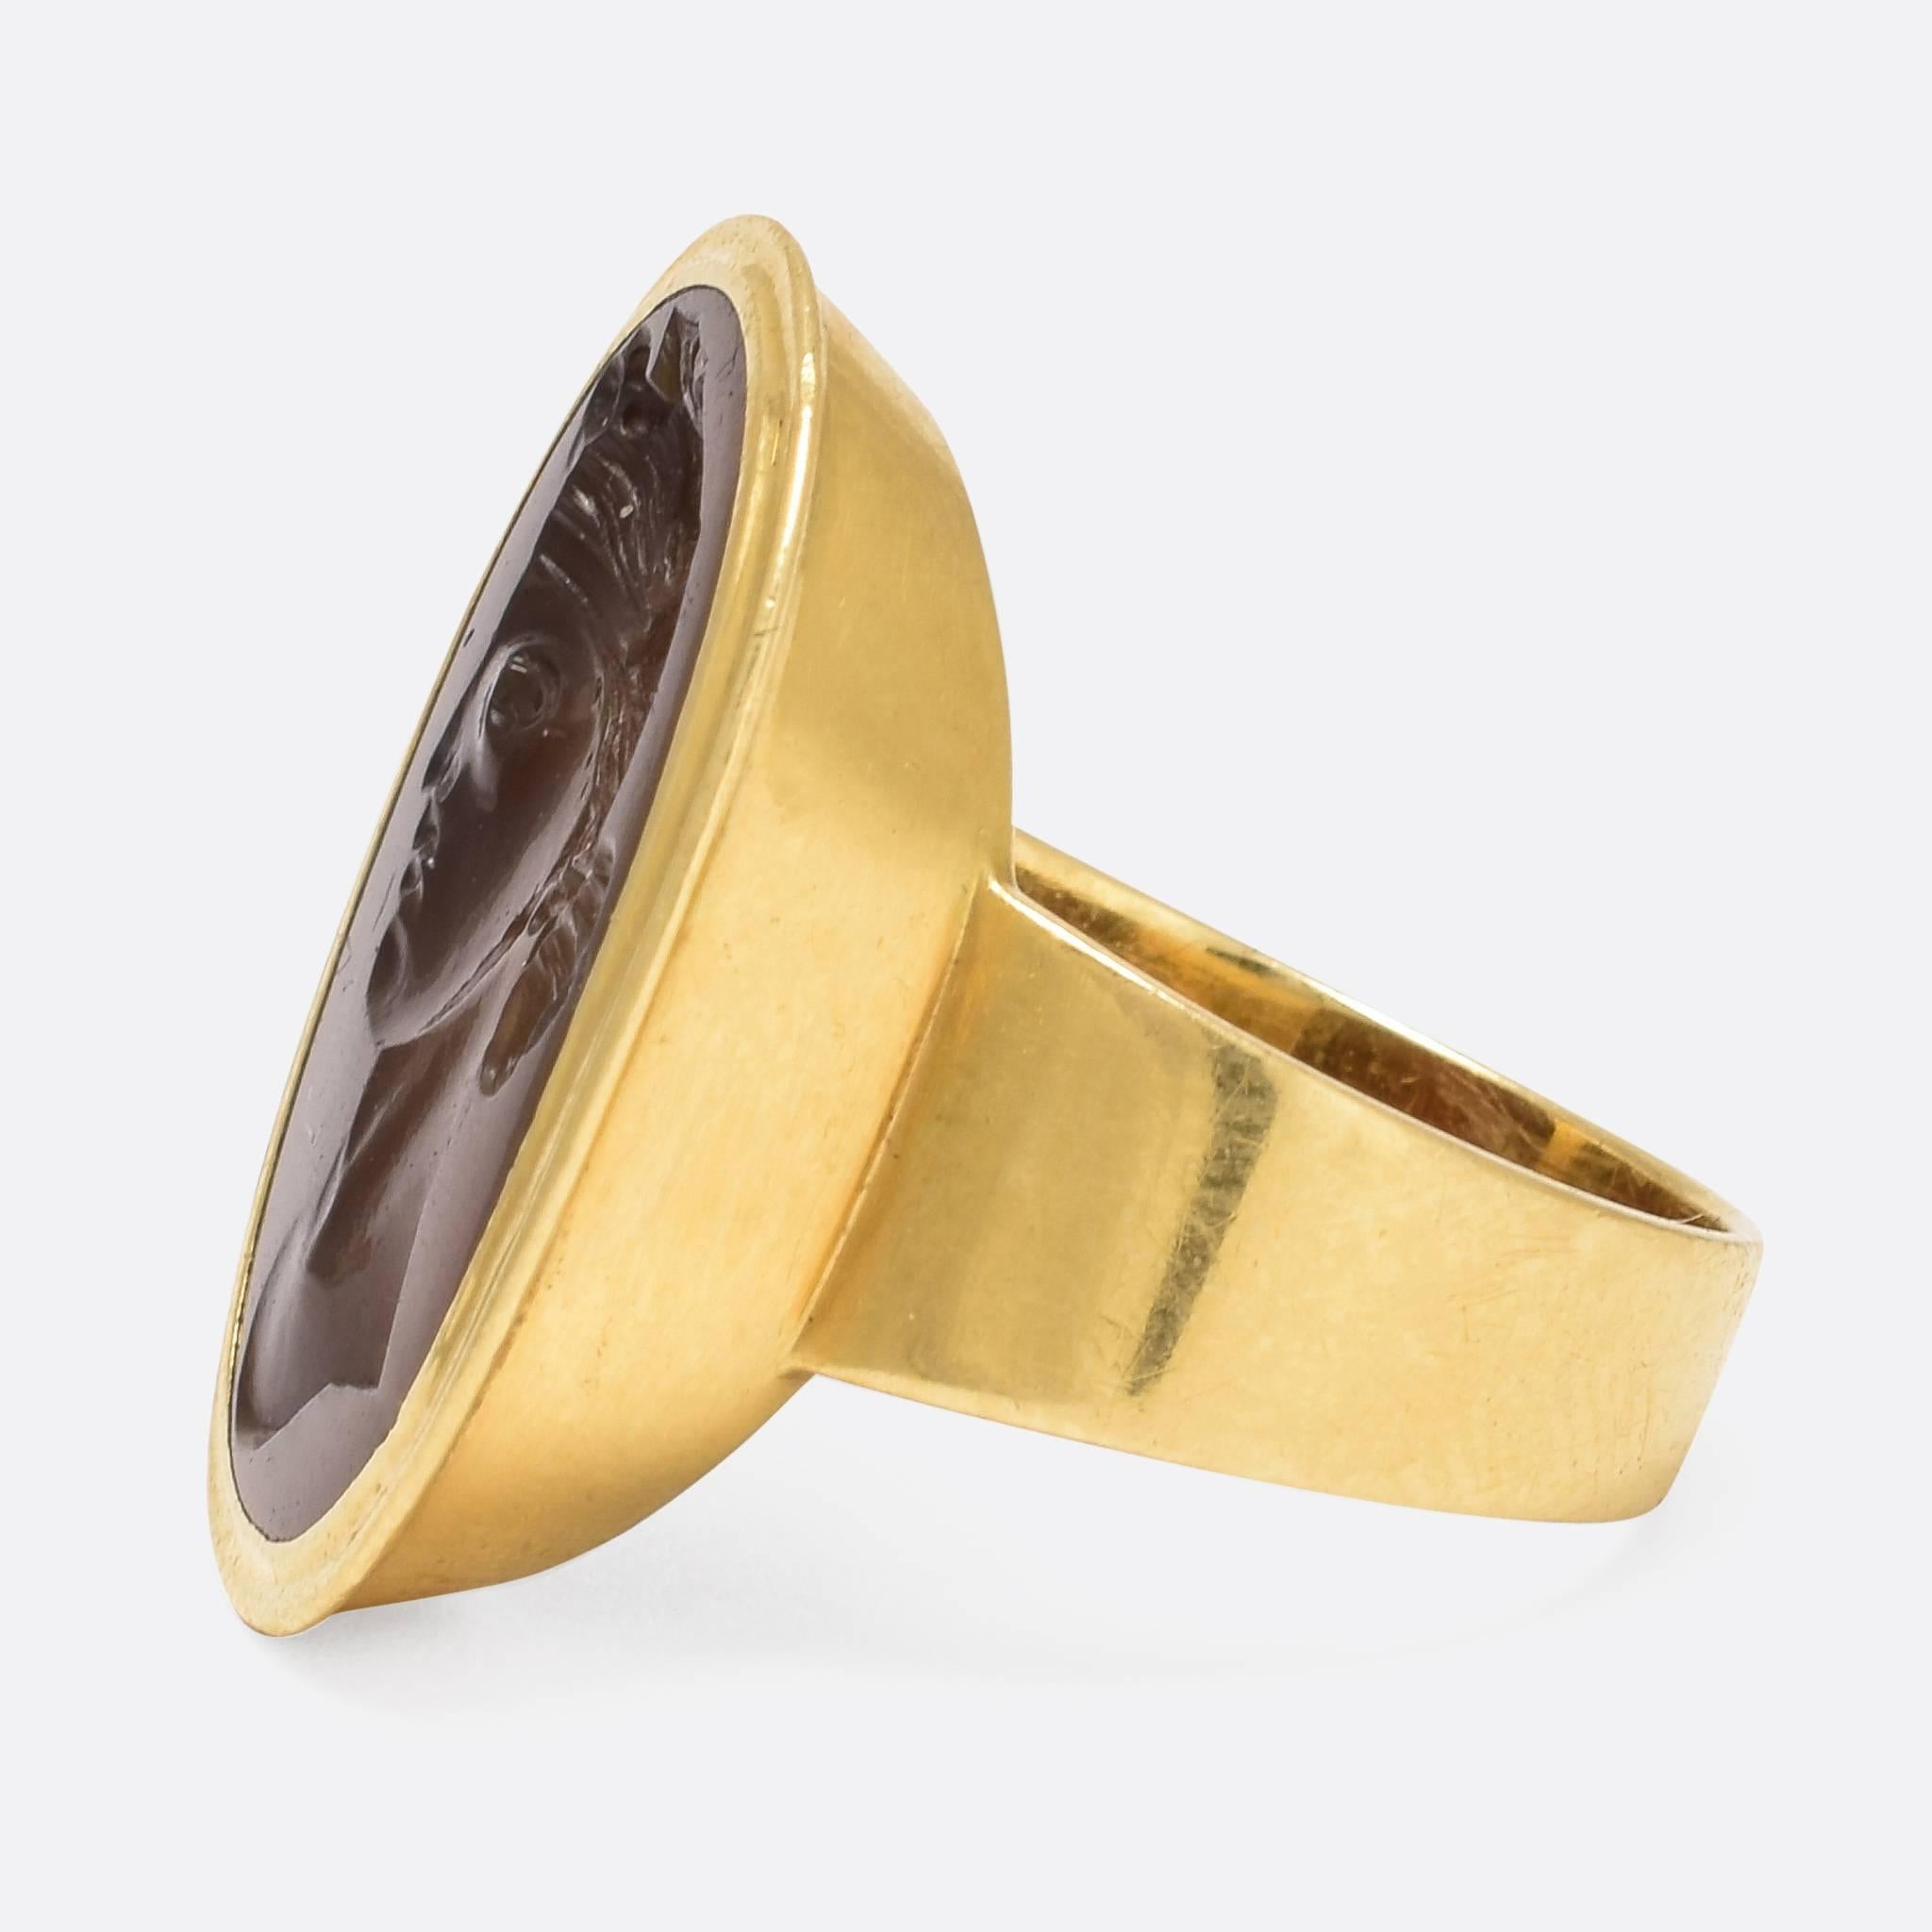 George III Georgian “Flora” Agate Intaglio Gold Ring